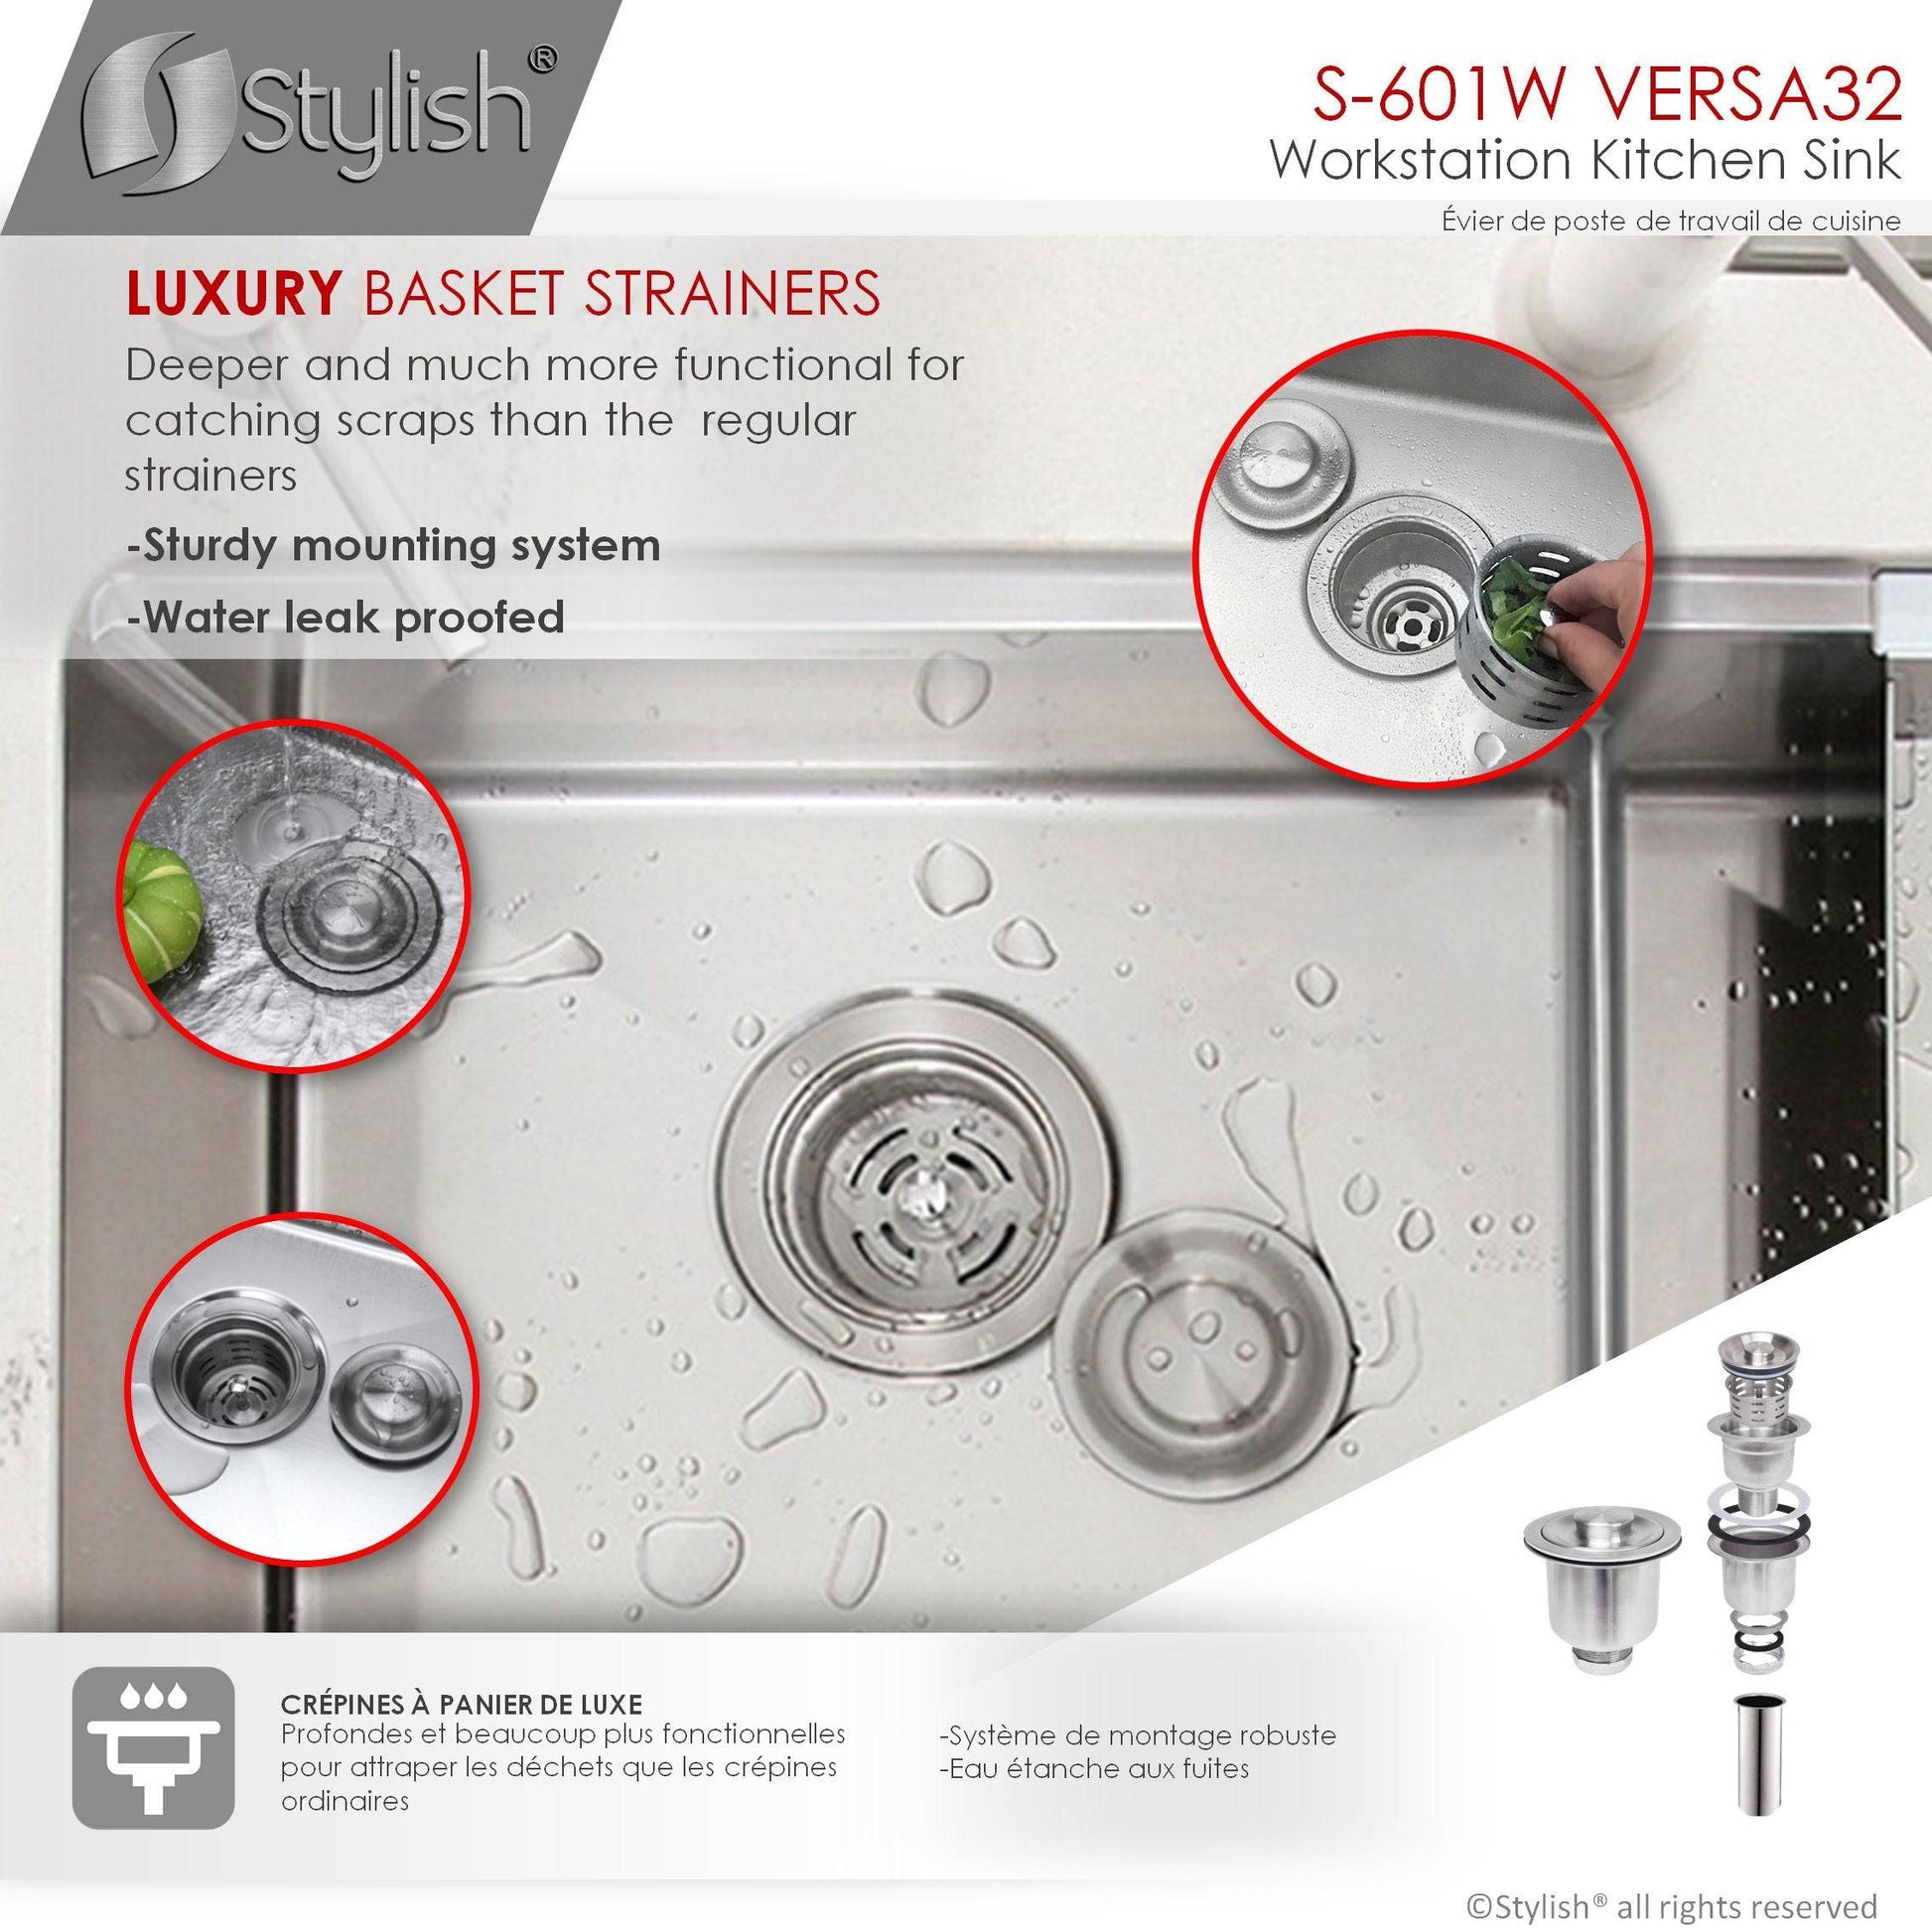 Stylish Versa 32 32" x 19" Workstation Double Bowl Undermount Kitchen Sink with Built in Accessories S-601W - Renoz